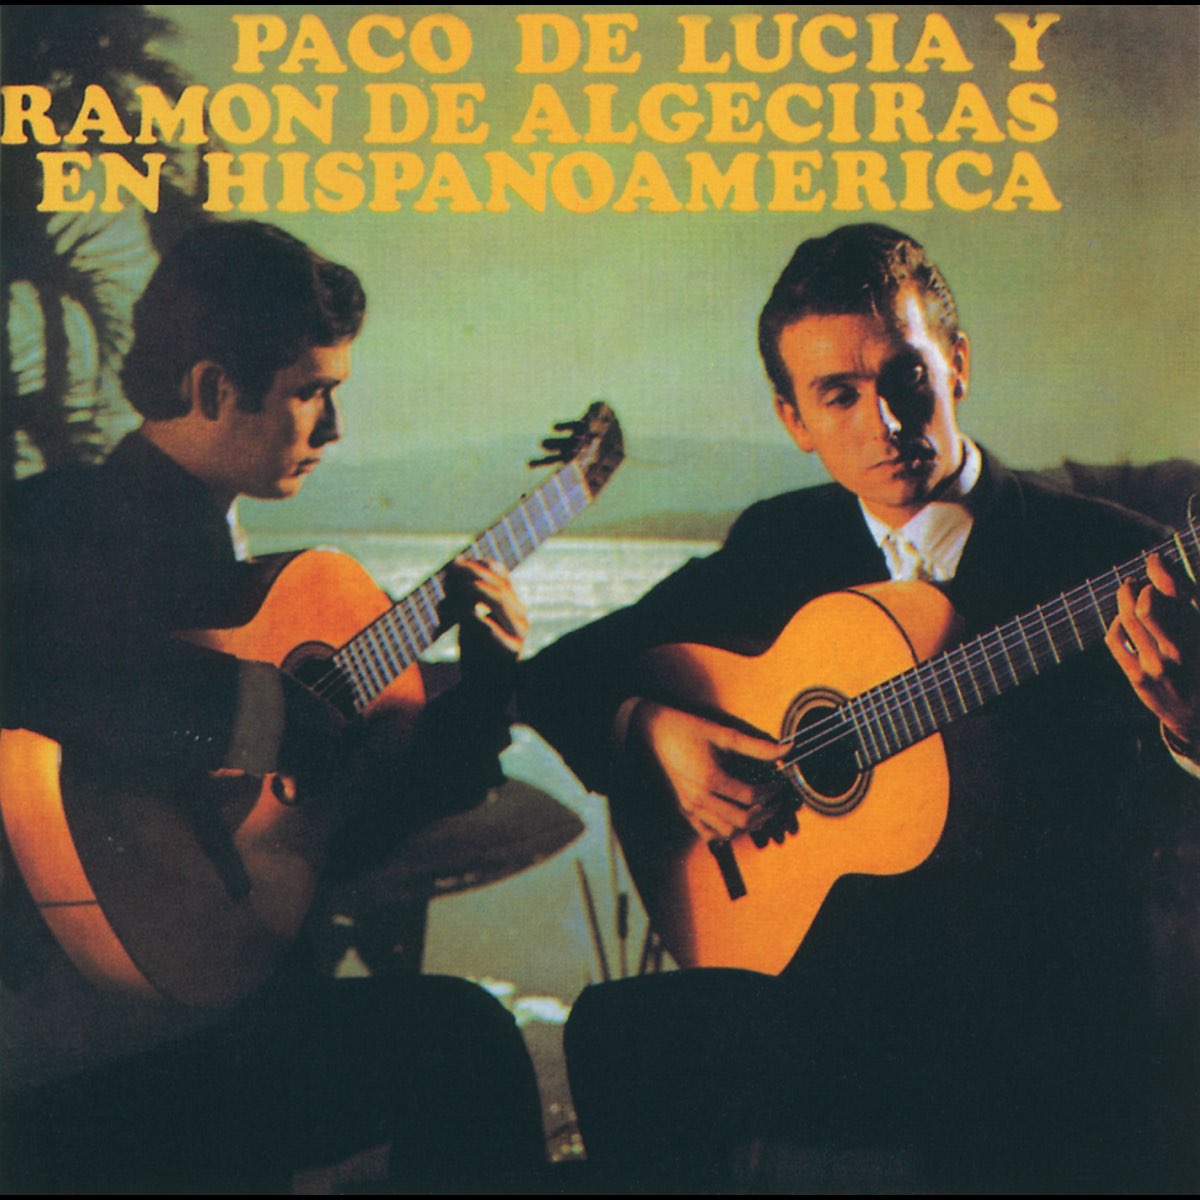 Paco de Lucia / Ramón de Algeciras en Hispanoamerica (Instrumental) - Album  by Paco de Lucía & Ramón Algeciras - Apple Music